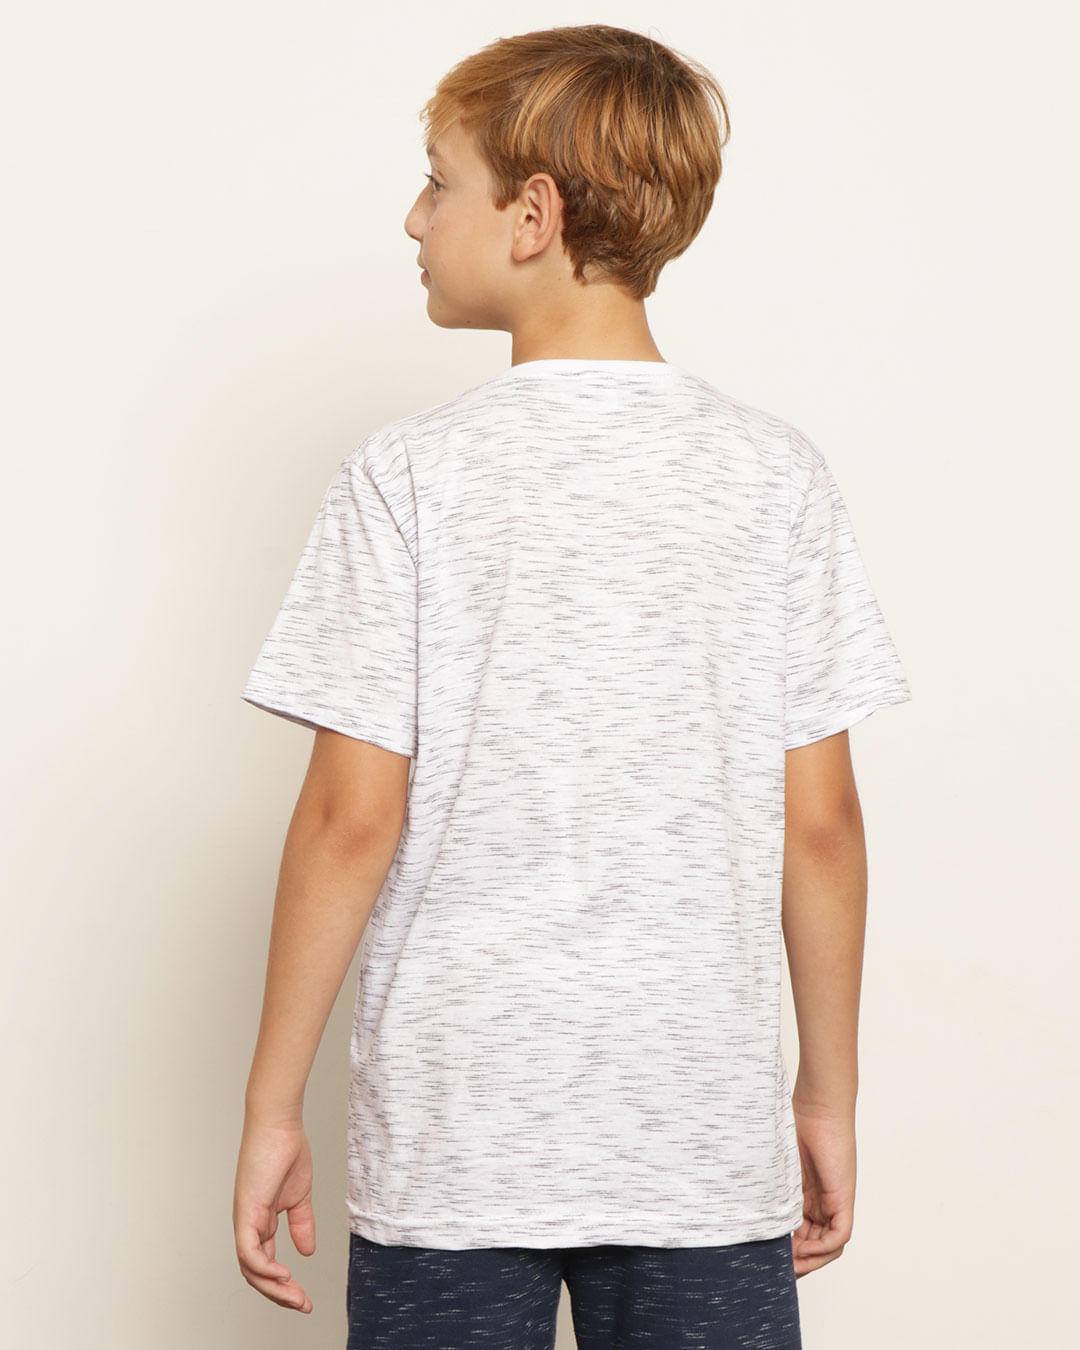 Camiseta-T35654-Mc-M-1016-Tropical---Branco